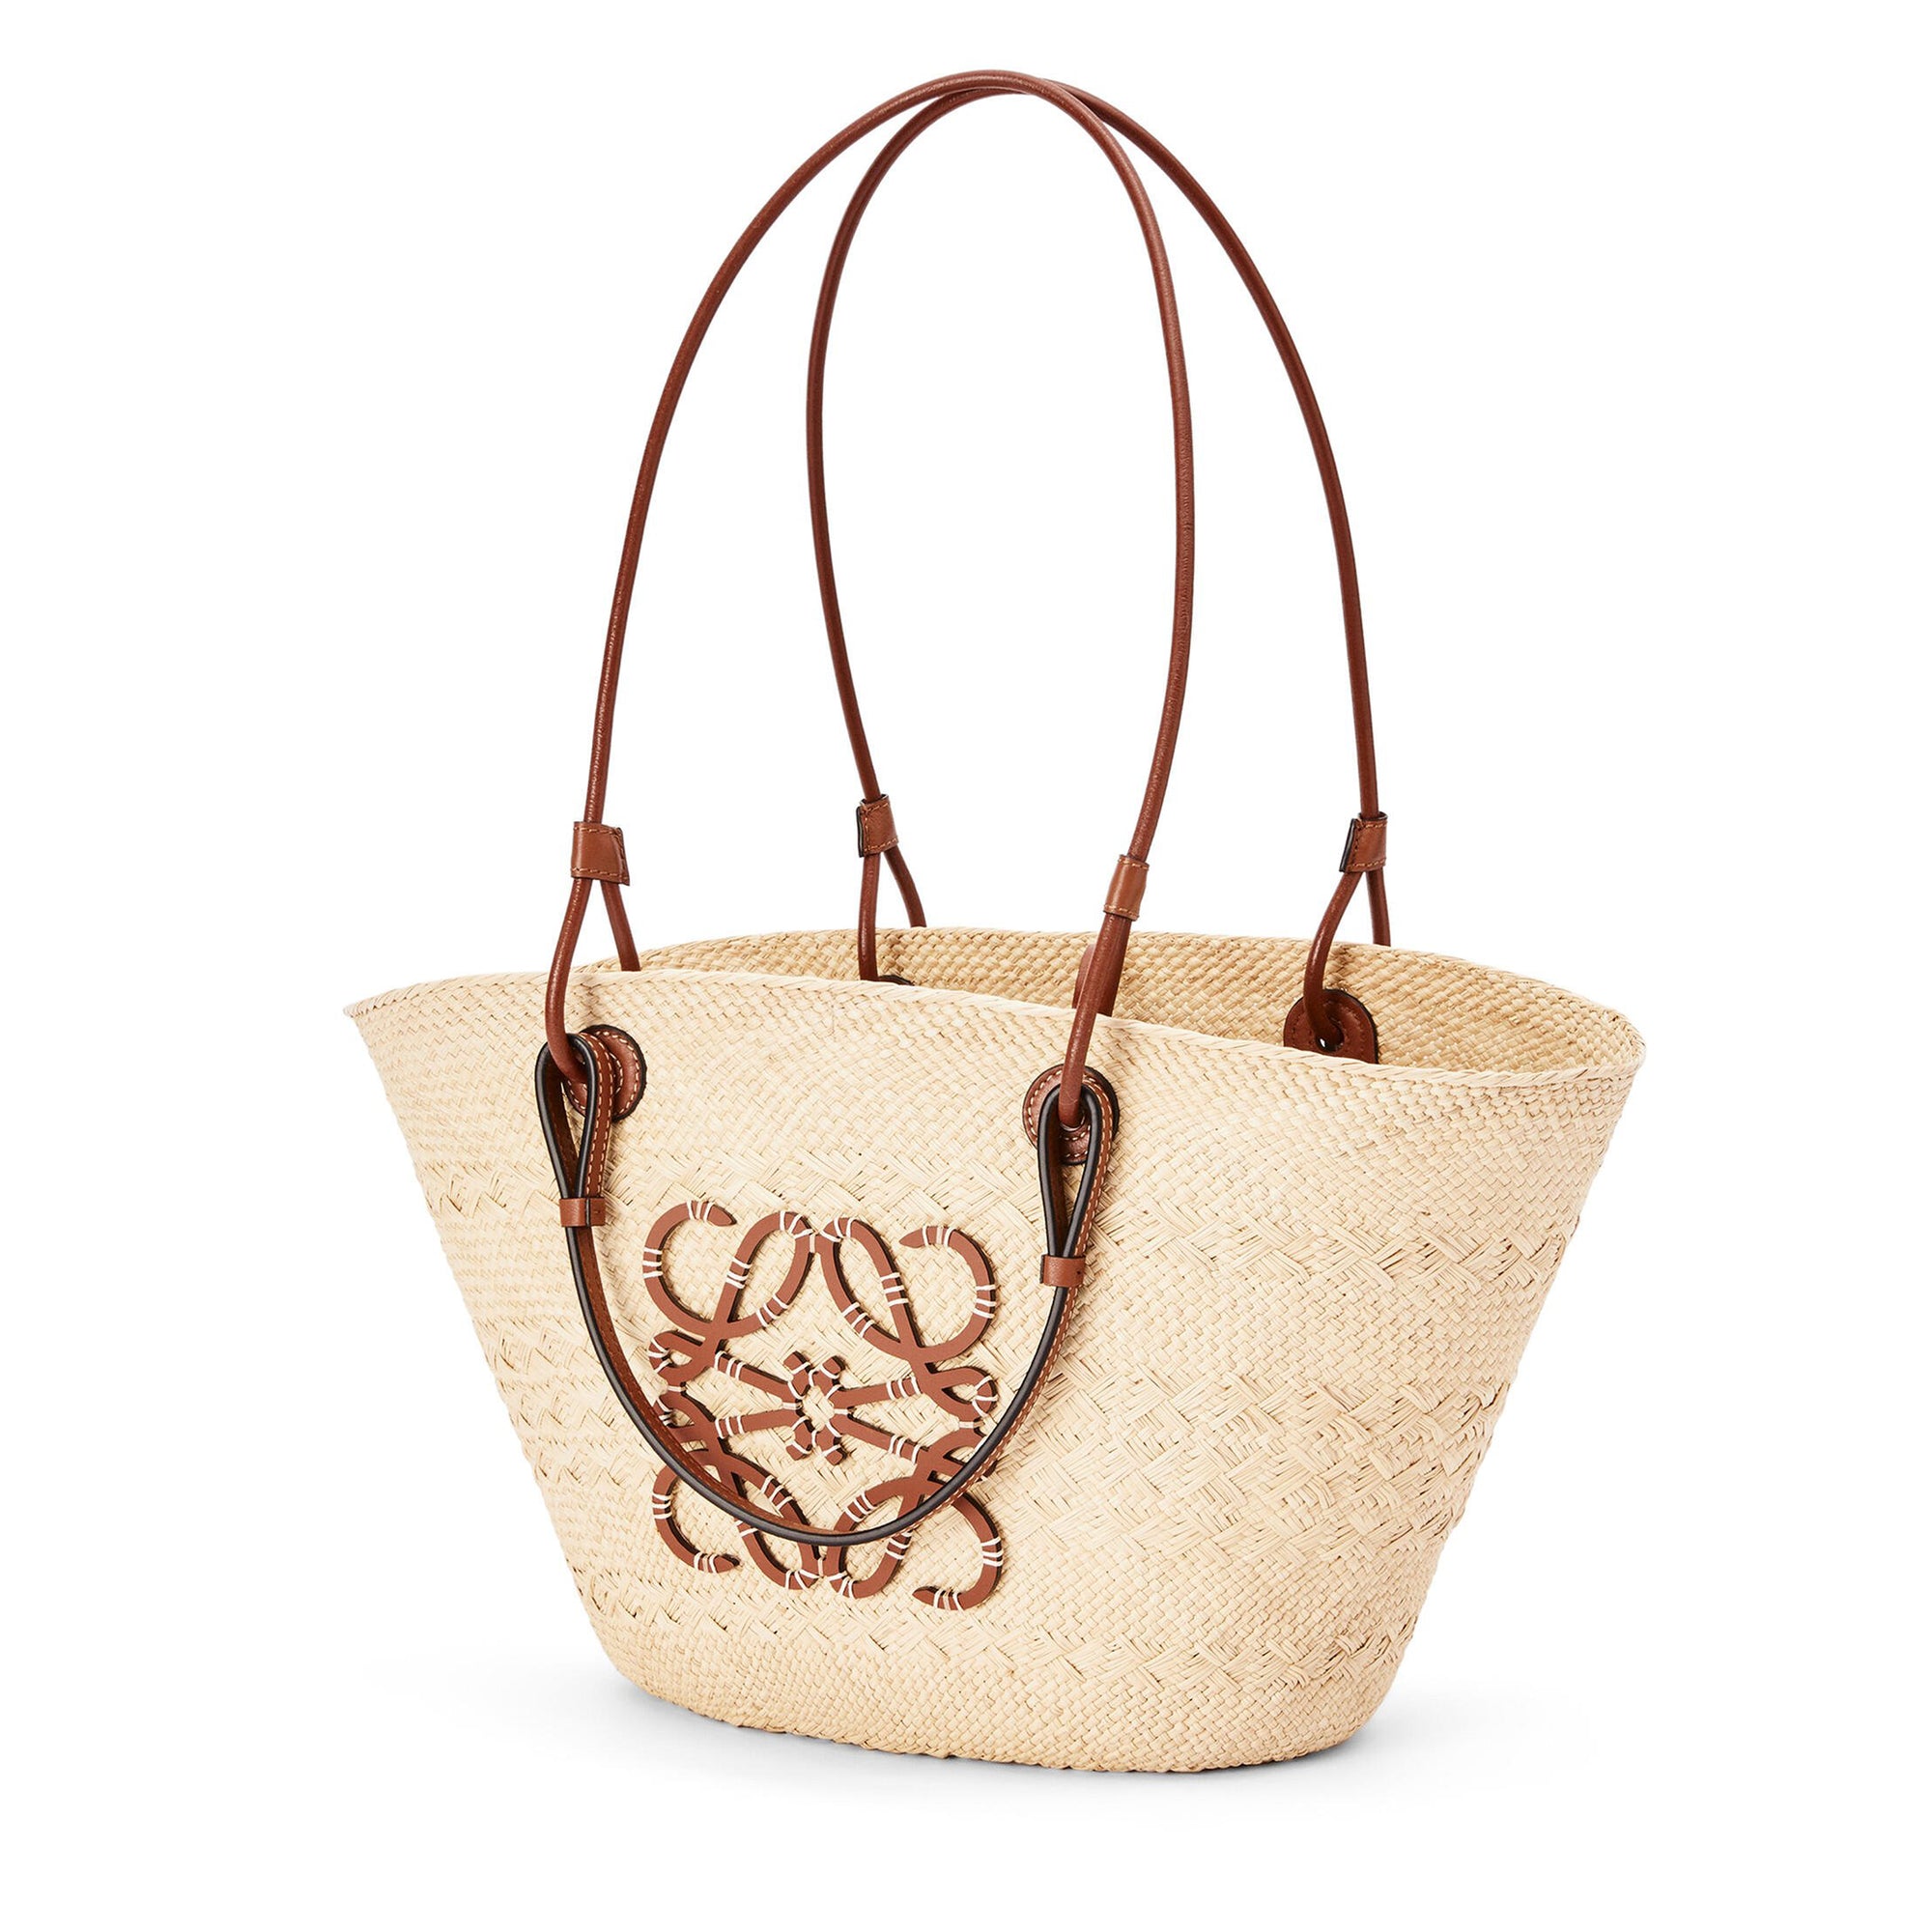 Loewe - Women’s Anagram Basket Bag - (Natural/Tan) view 2